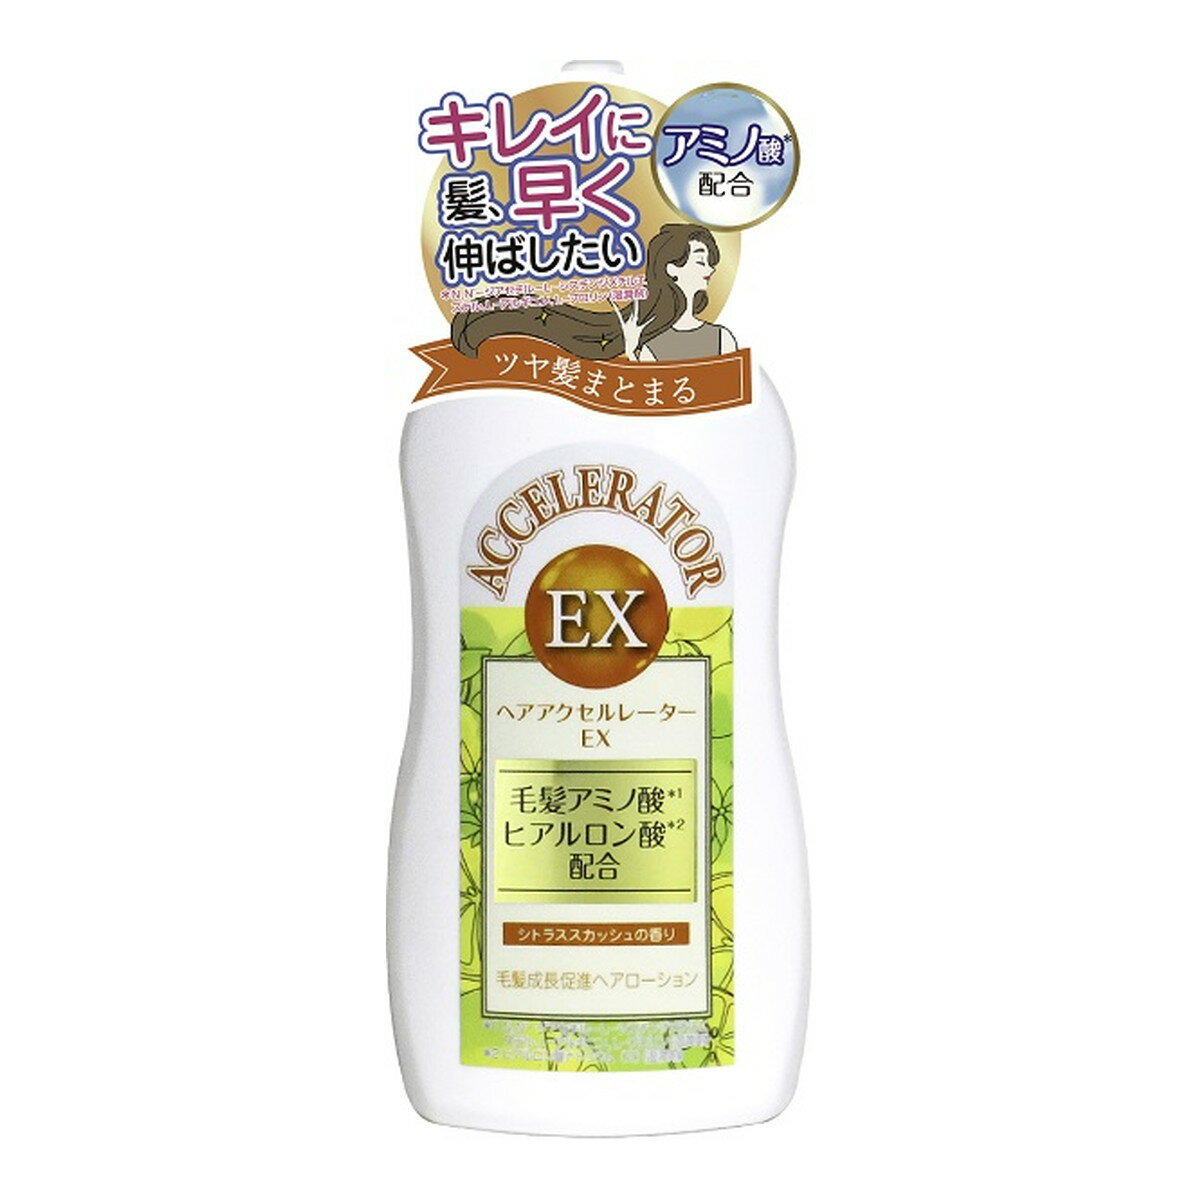 【送料込】加美乃素本舗 ヘアアクセルレーターEX シトラススカッシュの香り 150ml 1個